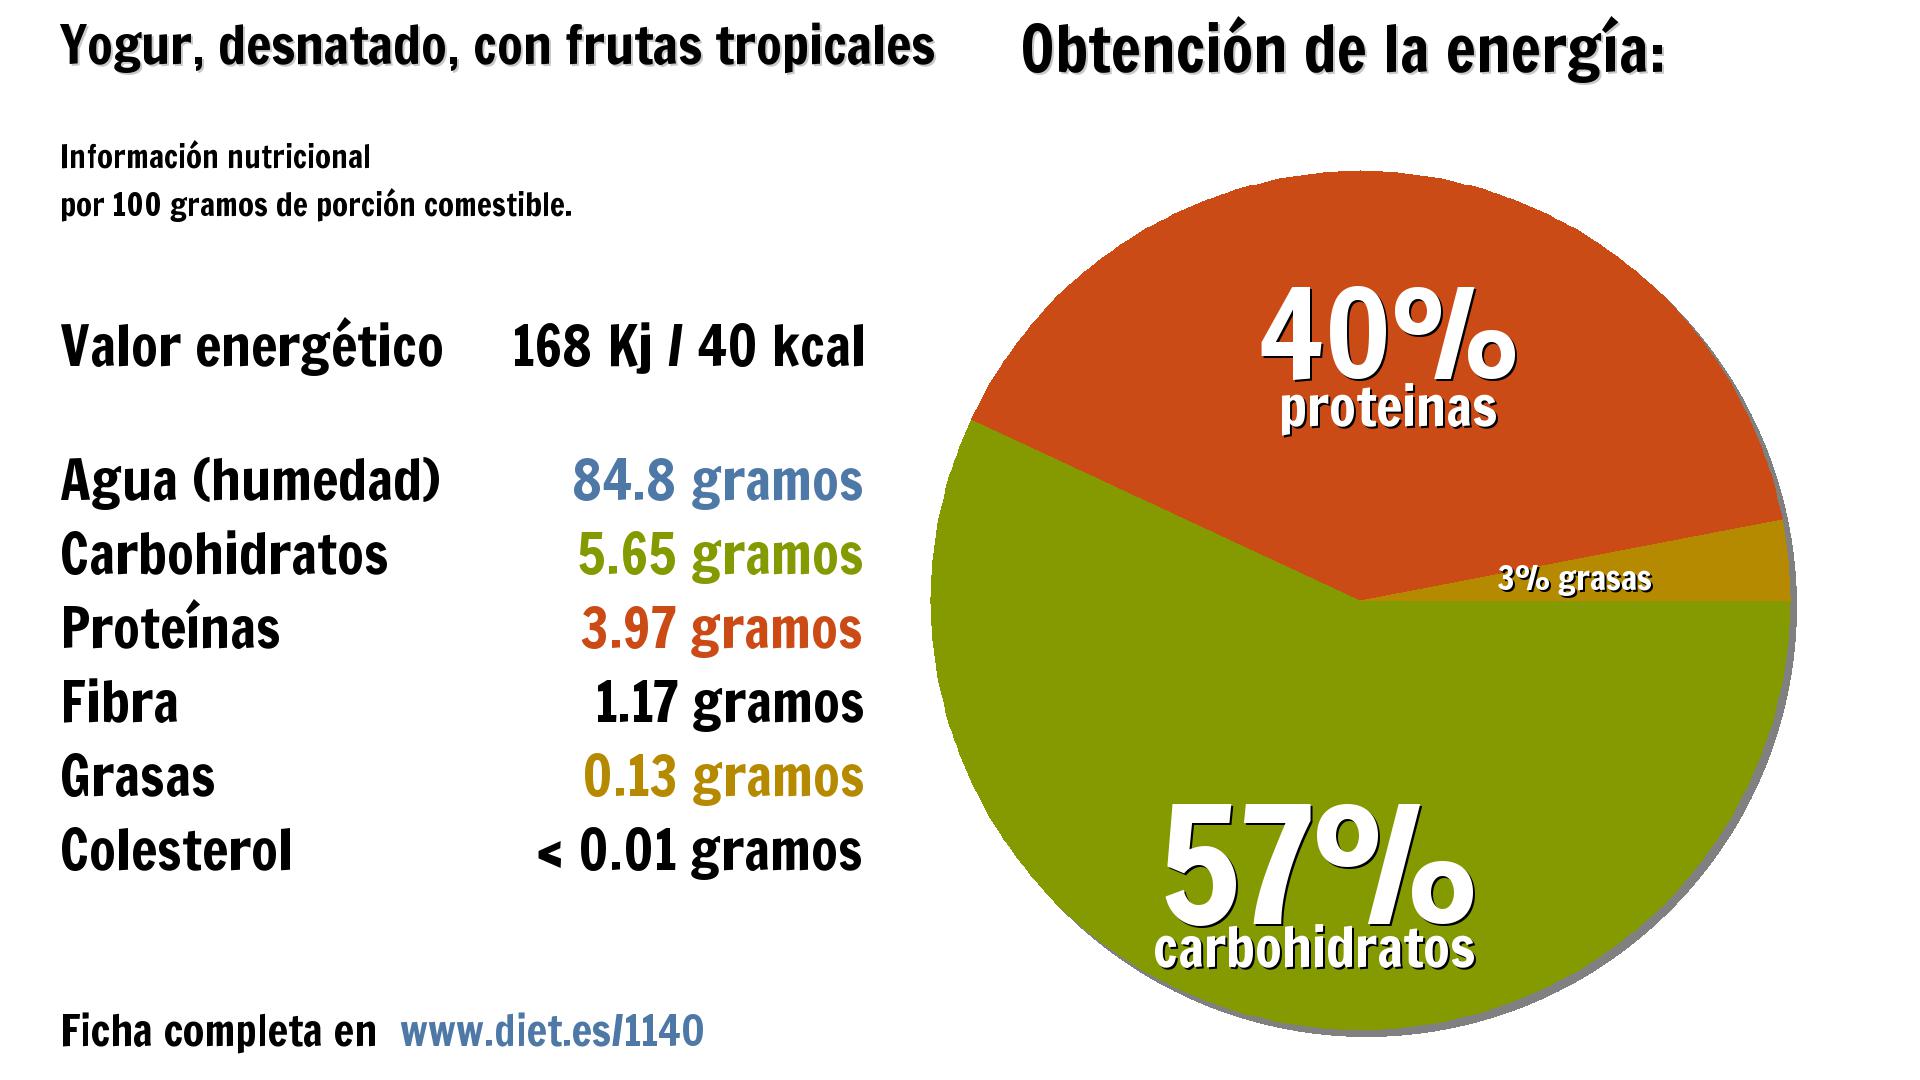 Yogur, desnatado, con frutas tropicales: energía 168 Kj, agua 85 g., carbohidratos 6 g., proteínas 4 g. y fibra 1 g.